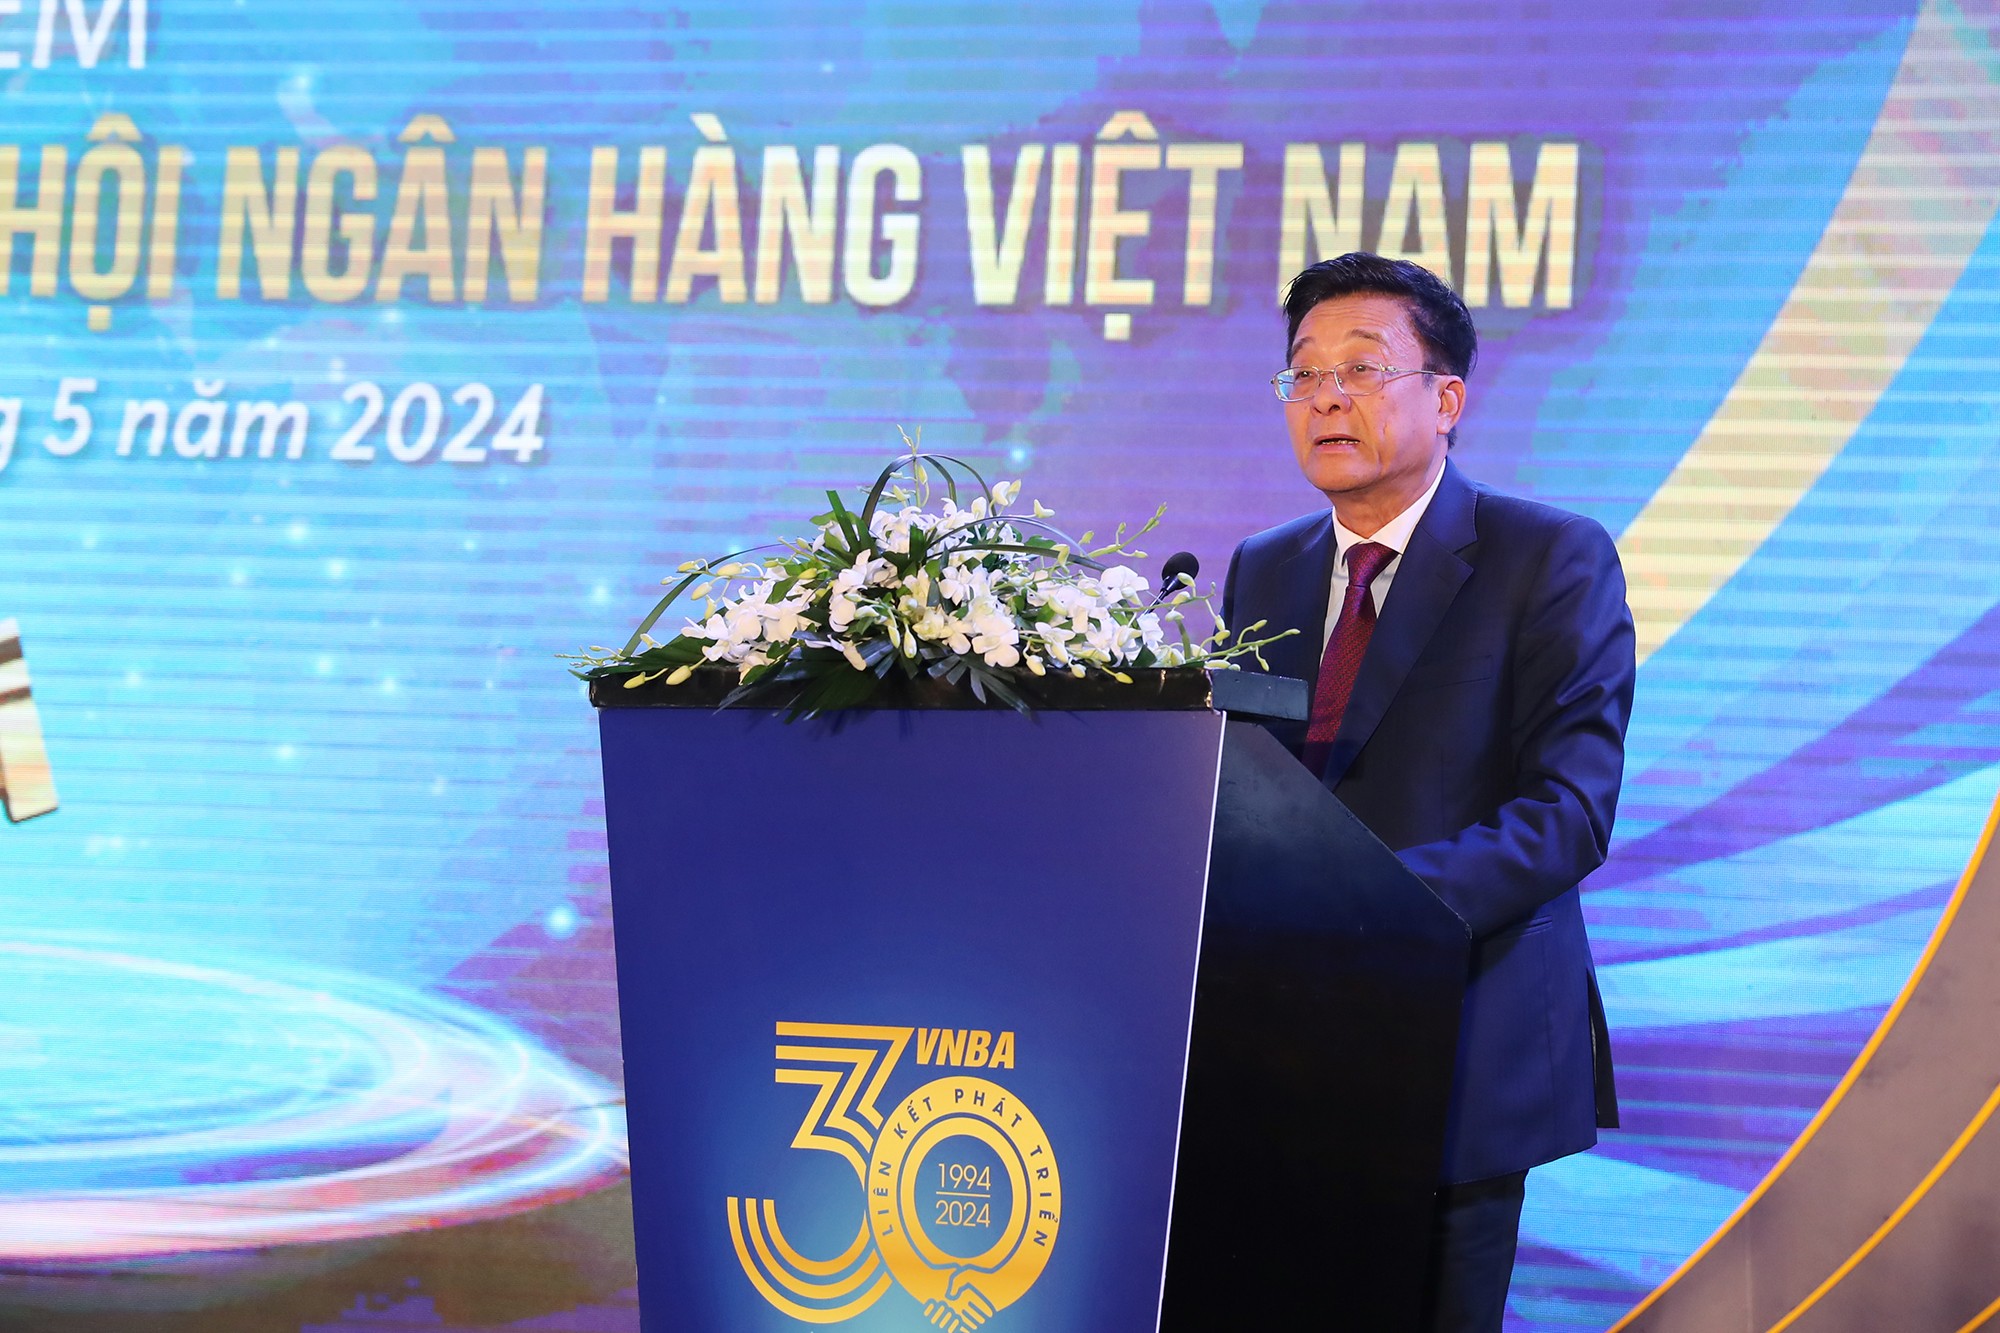 Hiệp hội Ngân hàng Việt Nam: 30 năm nối “nhịp cầu” các ngân hàng thương mại